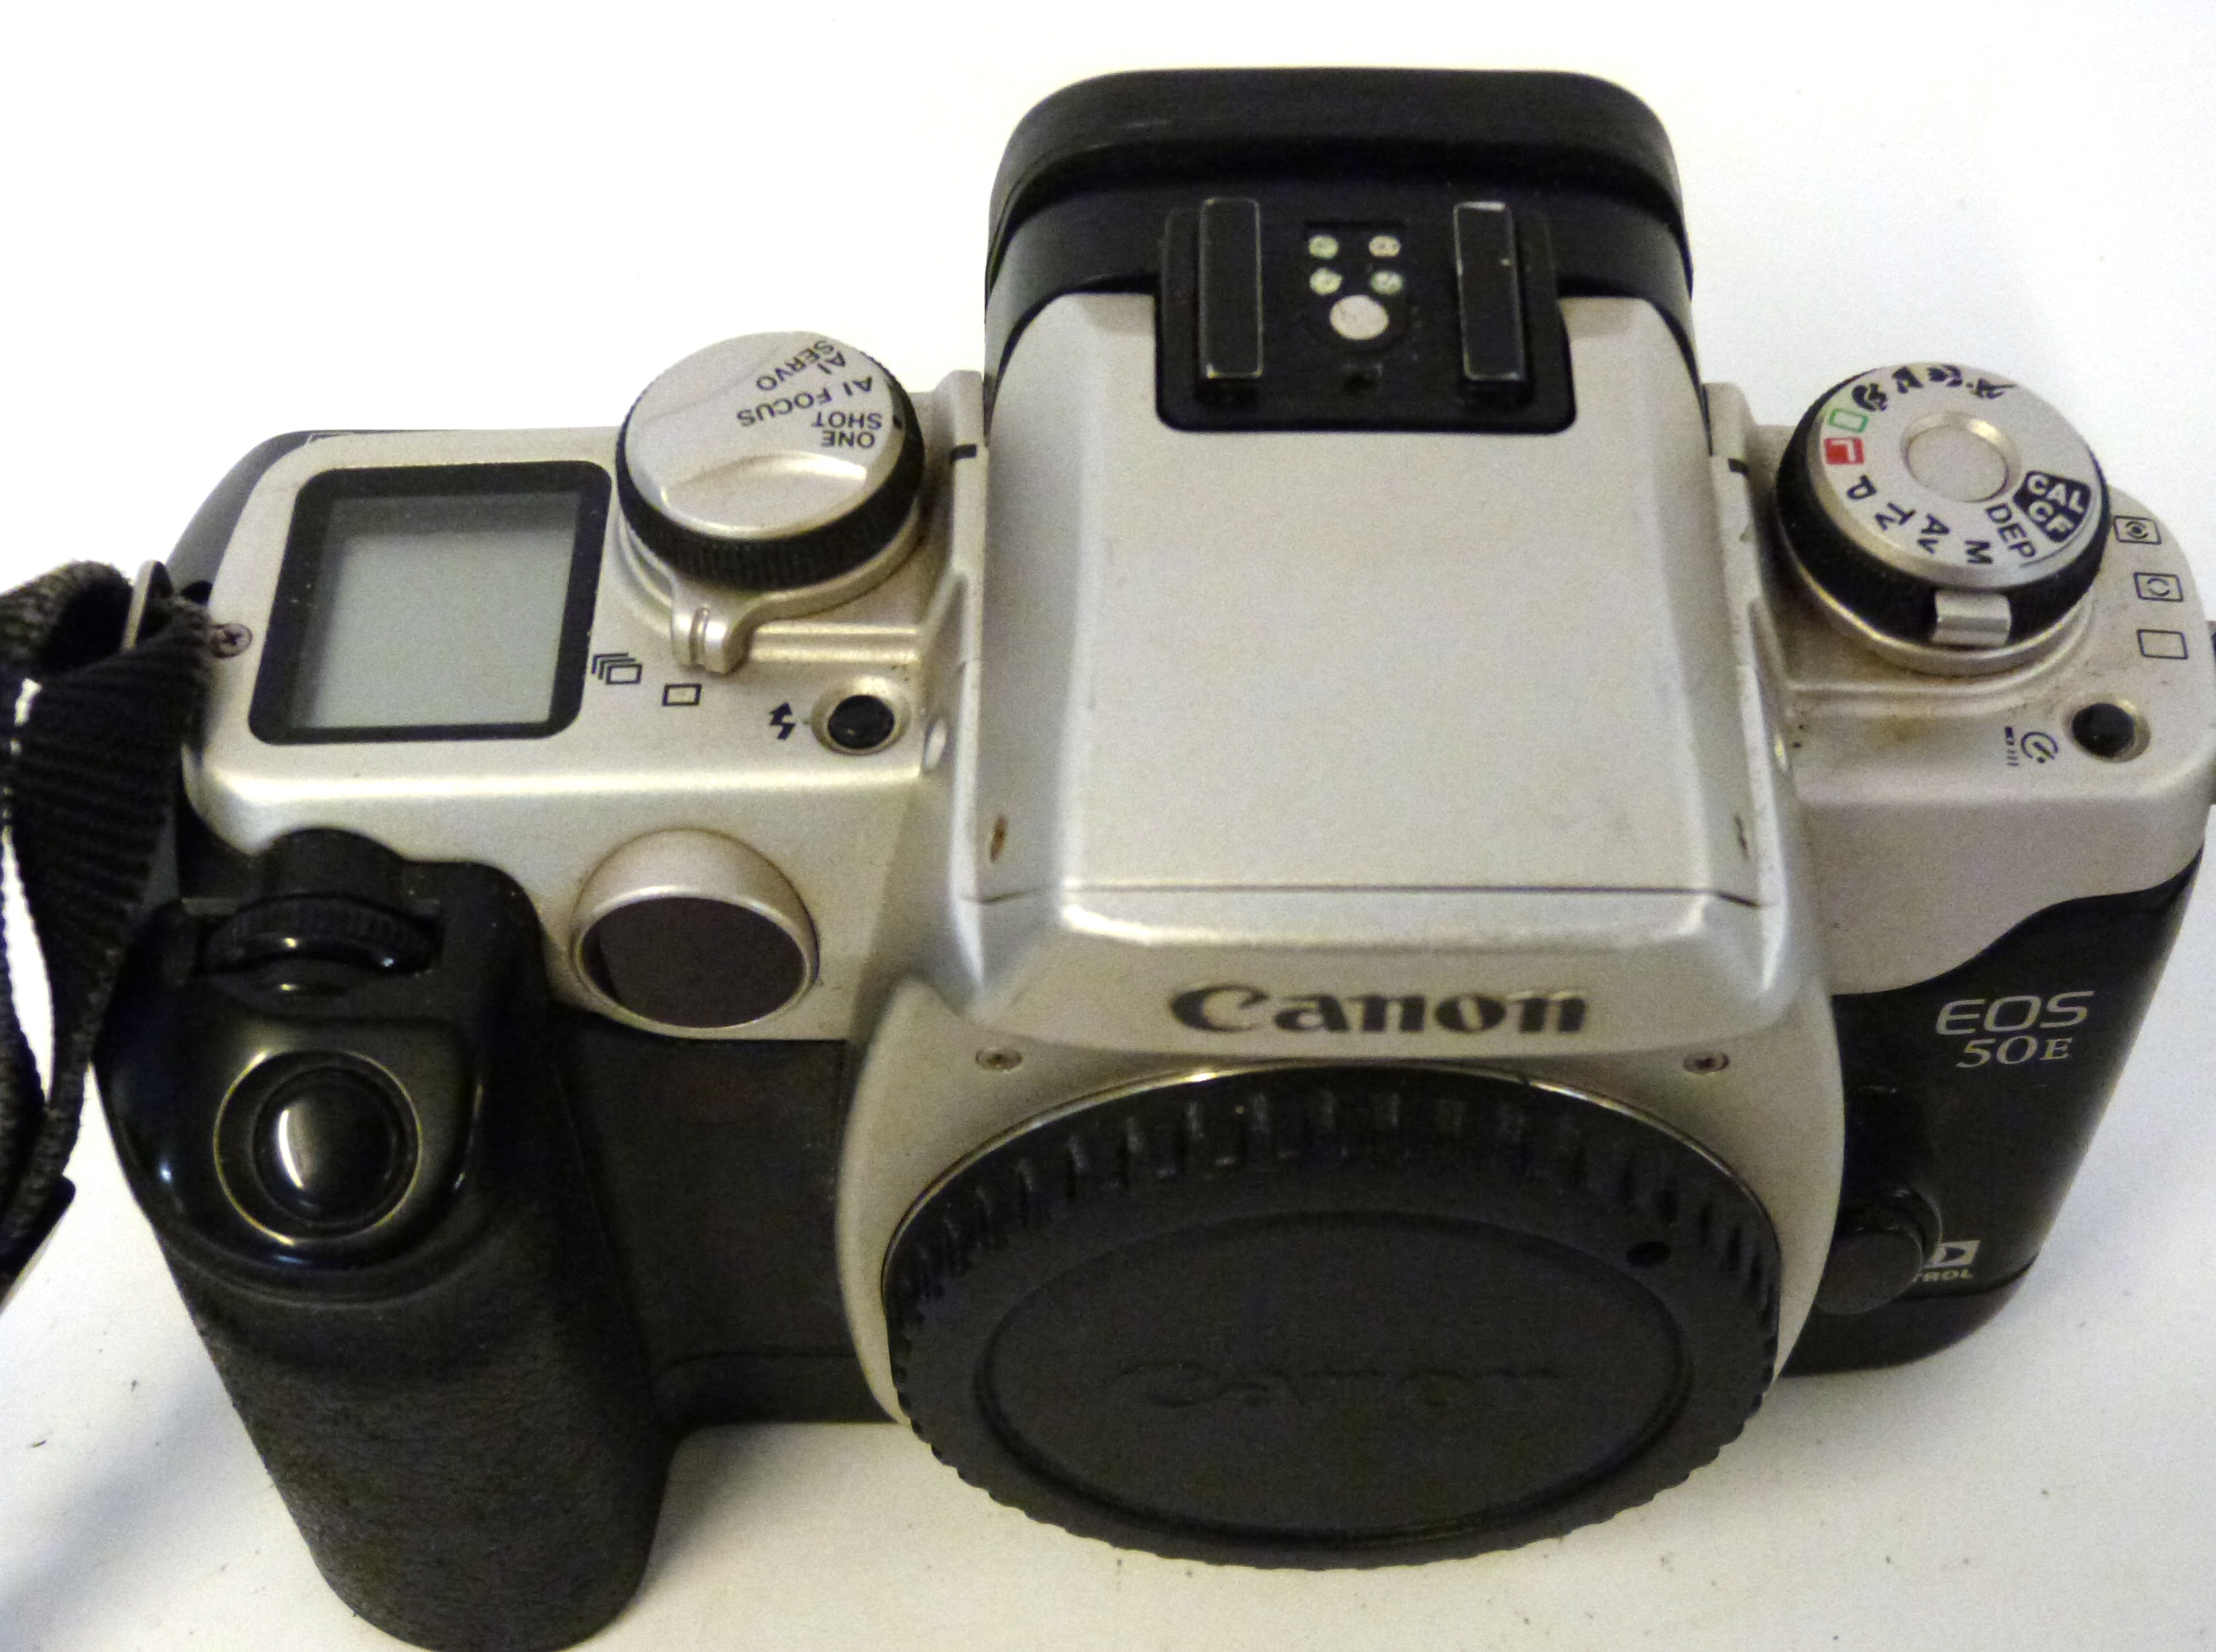 Canon EOS 50E film camera - Image 2 of 2